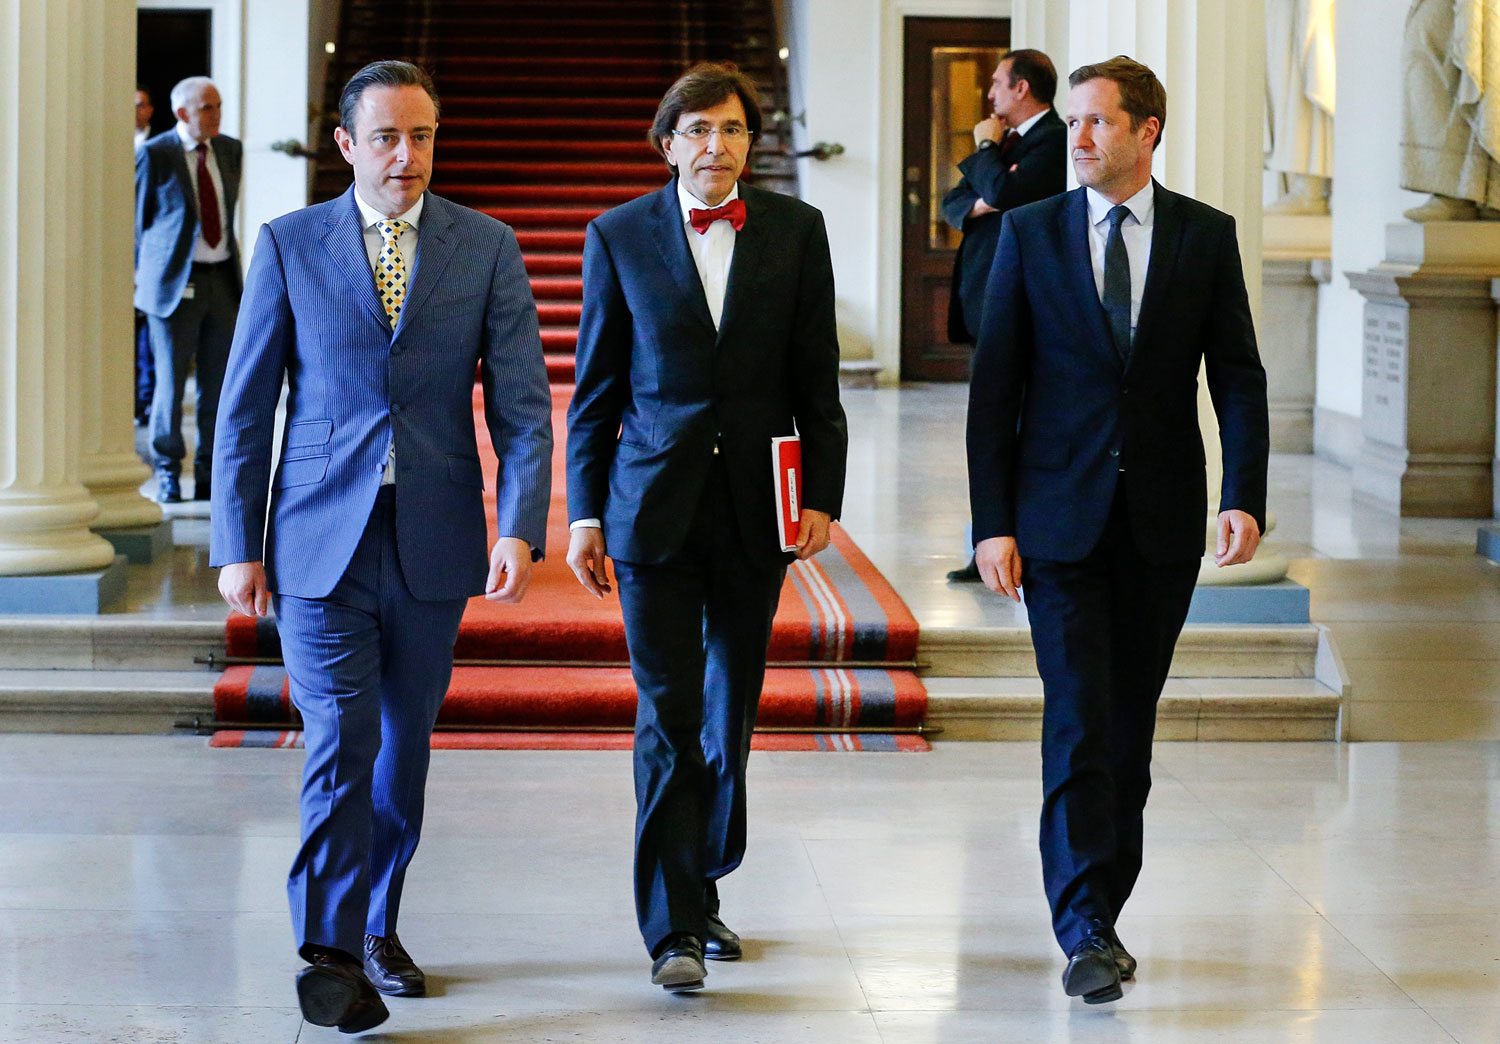 Bart De Wever, az Új Flamand Szövetség vezetője, Elio Di Rupo kormányfő és Paul Magnette, a Szocialista Párt elnöke a parlamentben